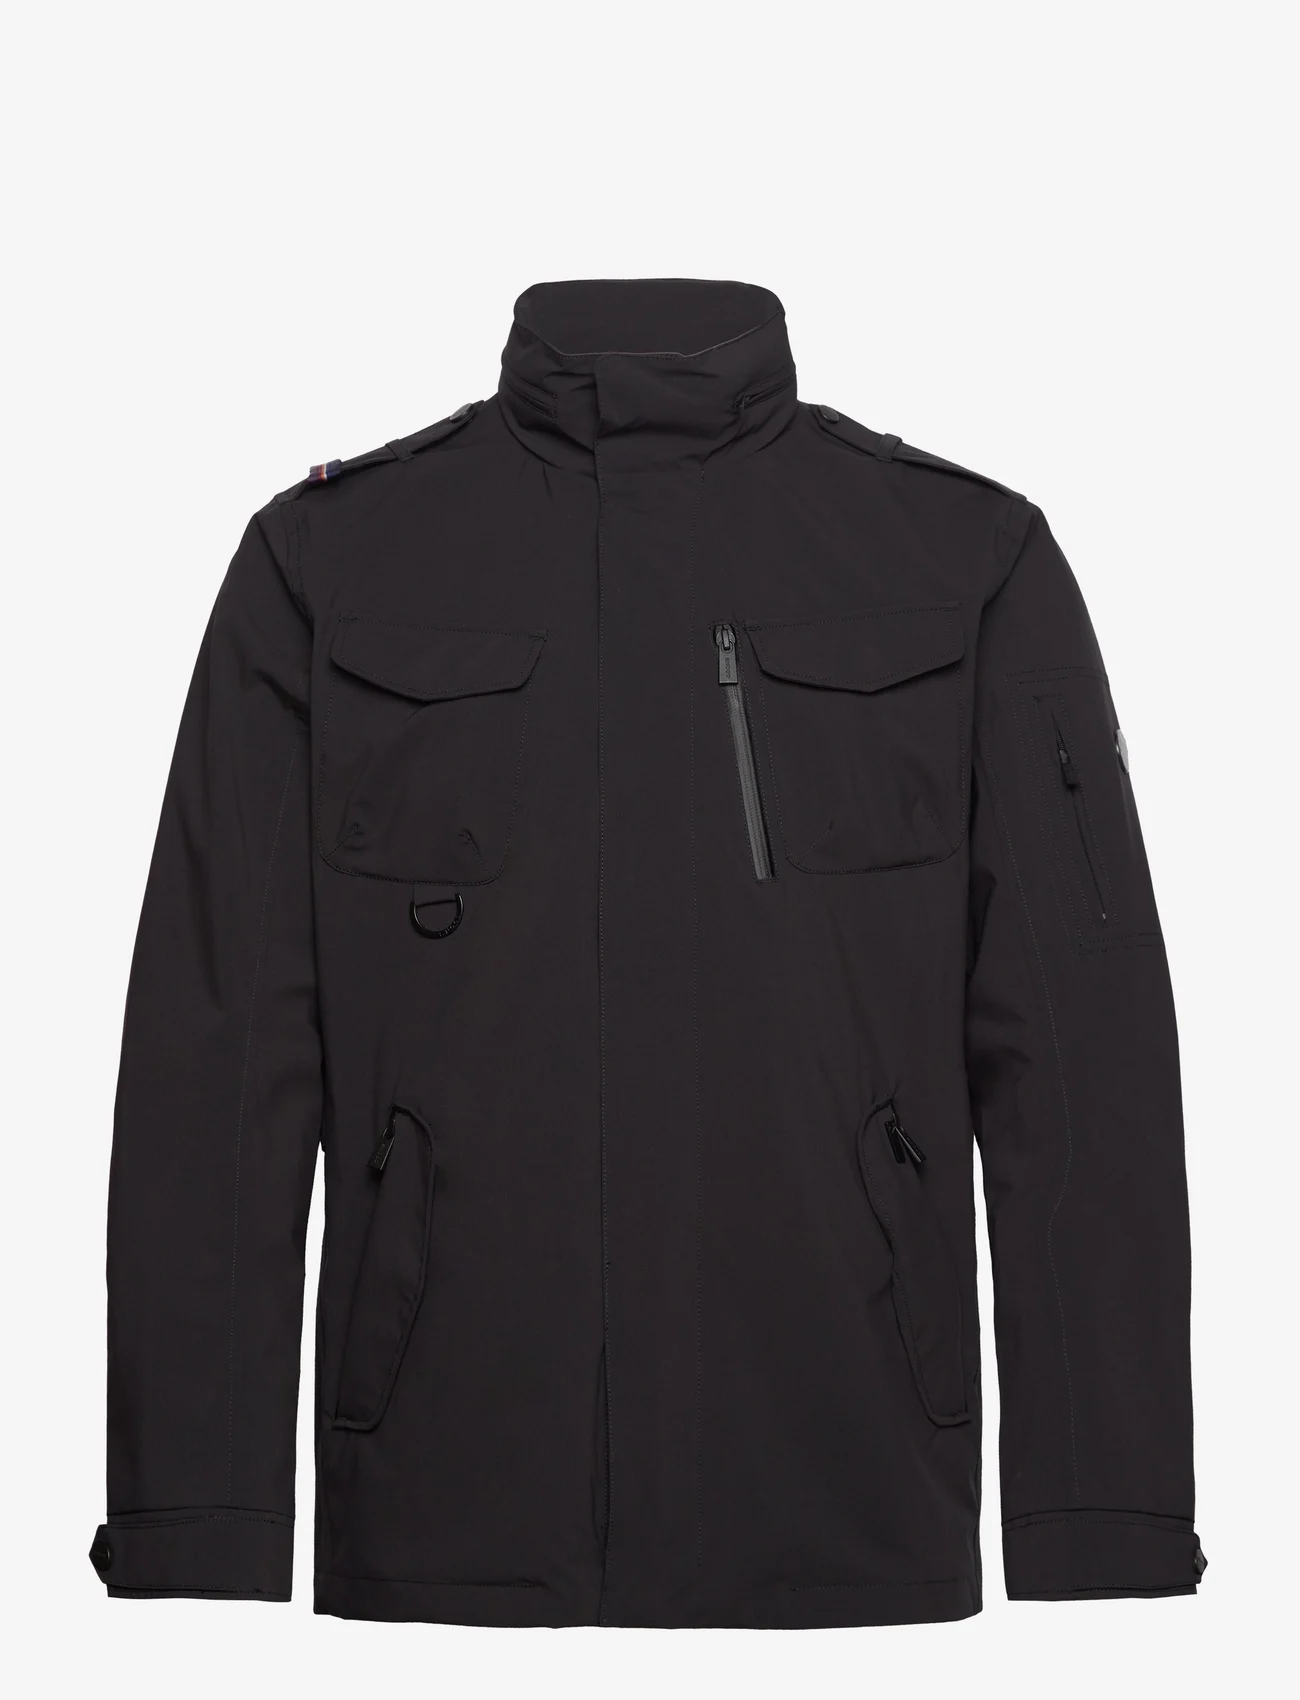 SNOOT - LIVORNO JKT M - spring jackets - black - 0